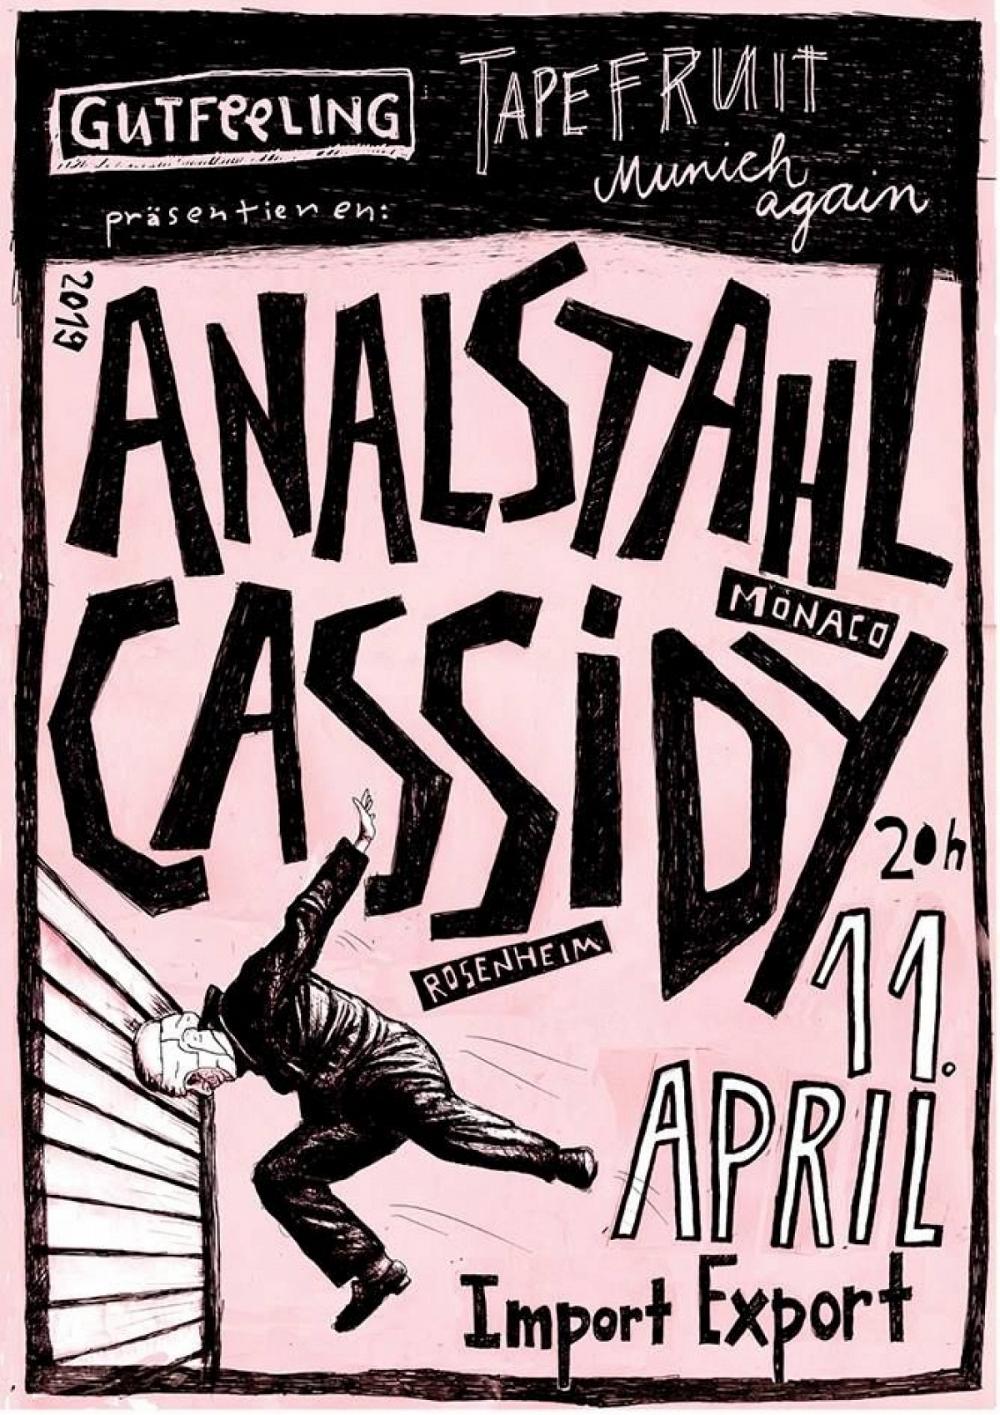 Tapefruit Konzert: Analstahl + Cassidy | 11.04.2019 @ Import Export